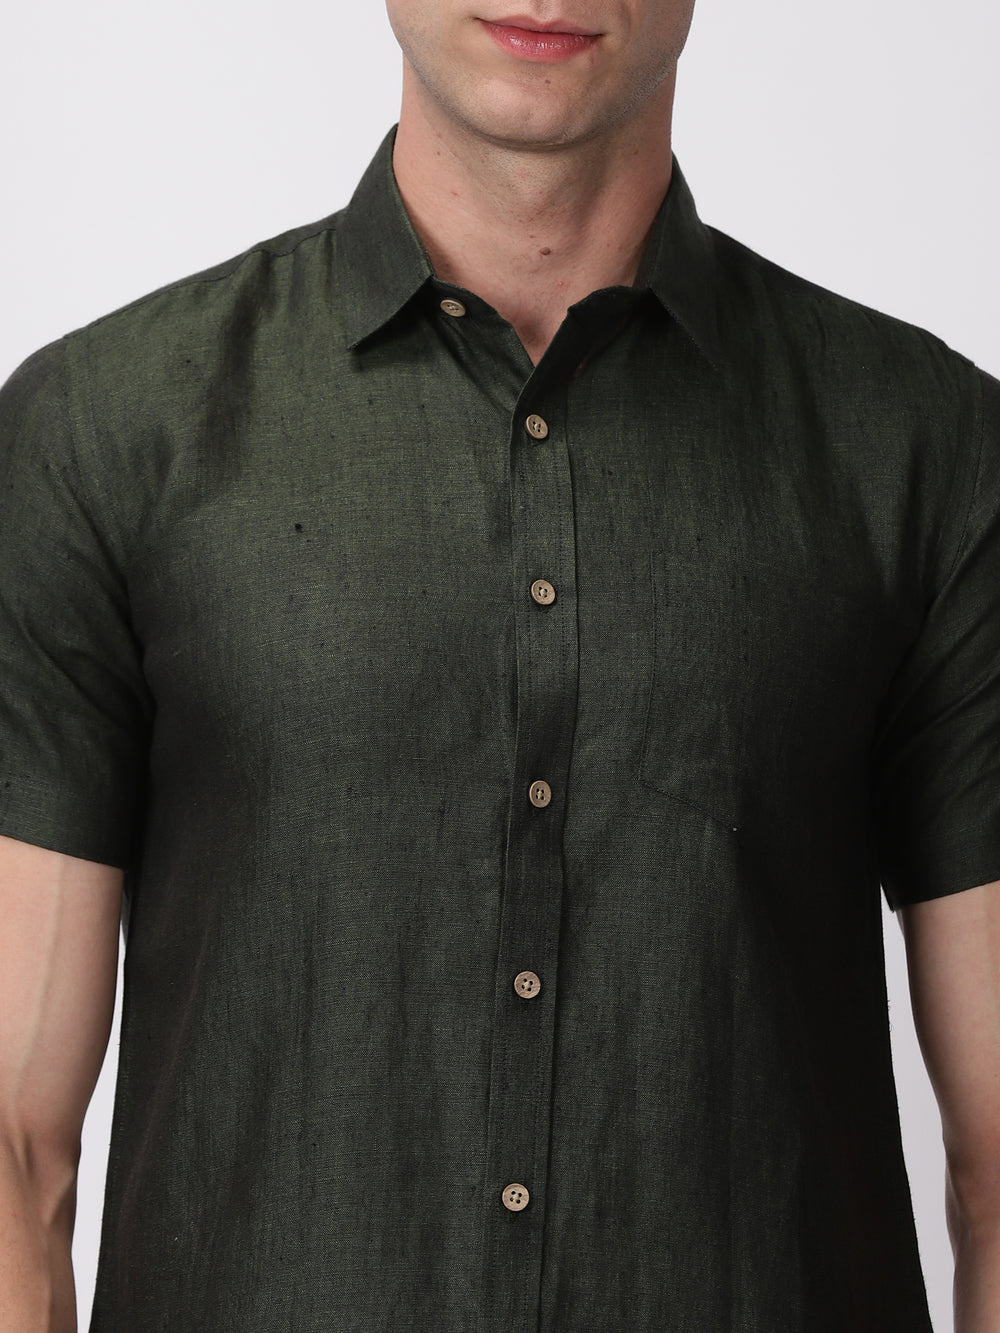 Harvey - Pure Linen Half Sleeve Shirt - Forest Green